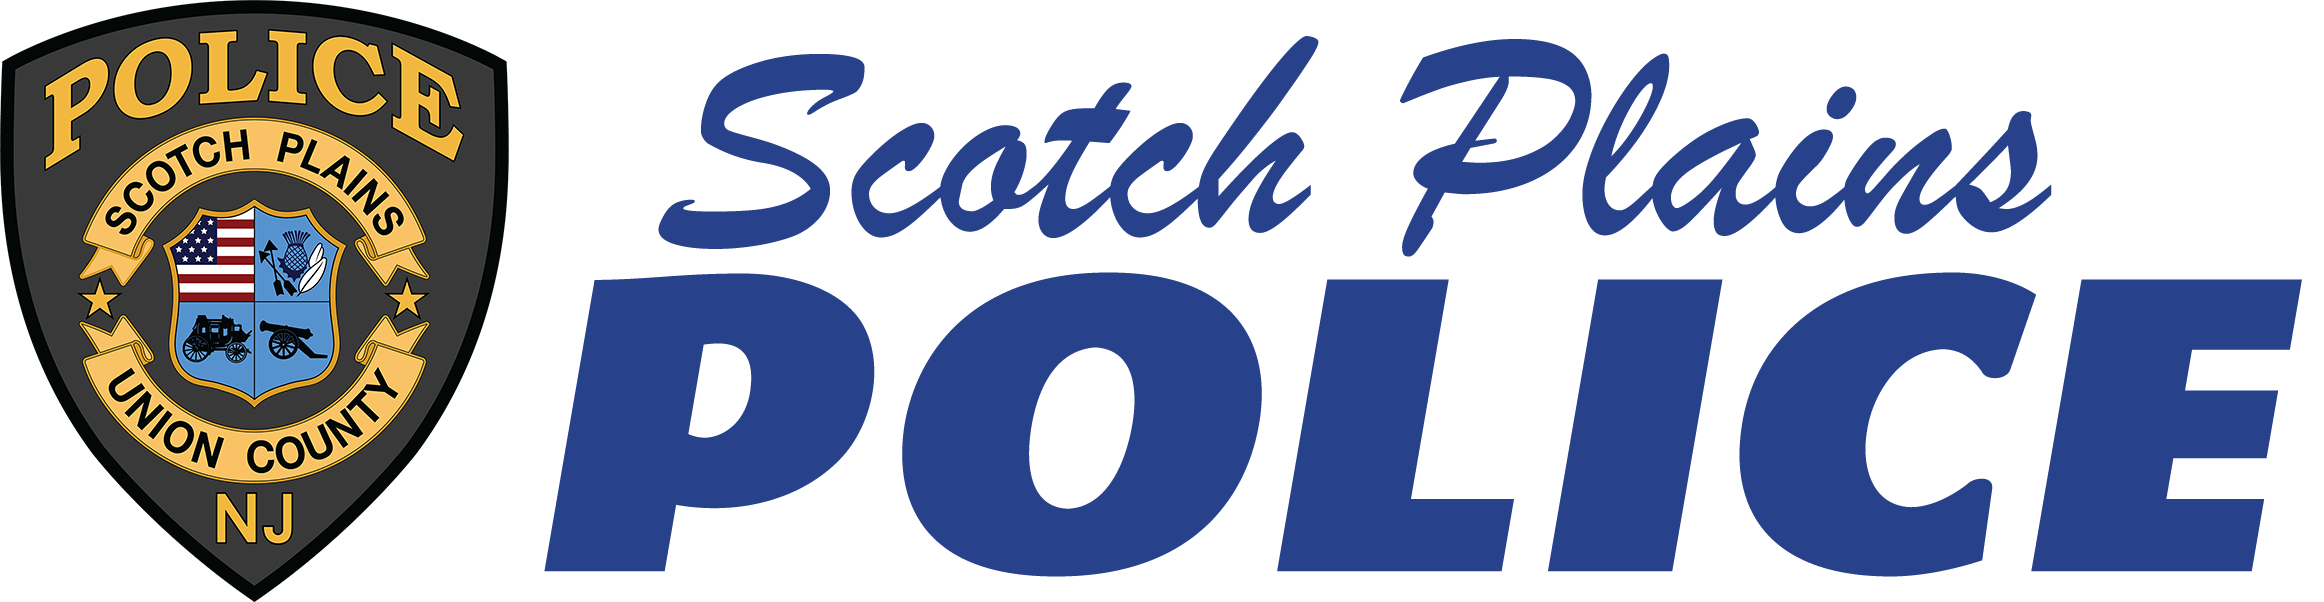 Scotch Plains Police Department